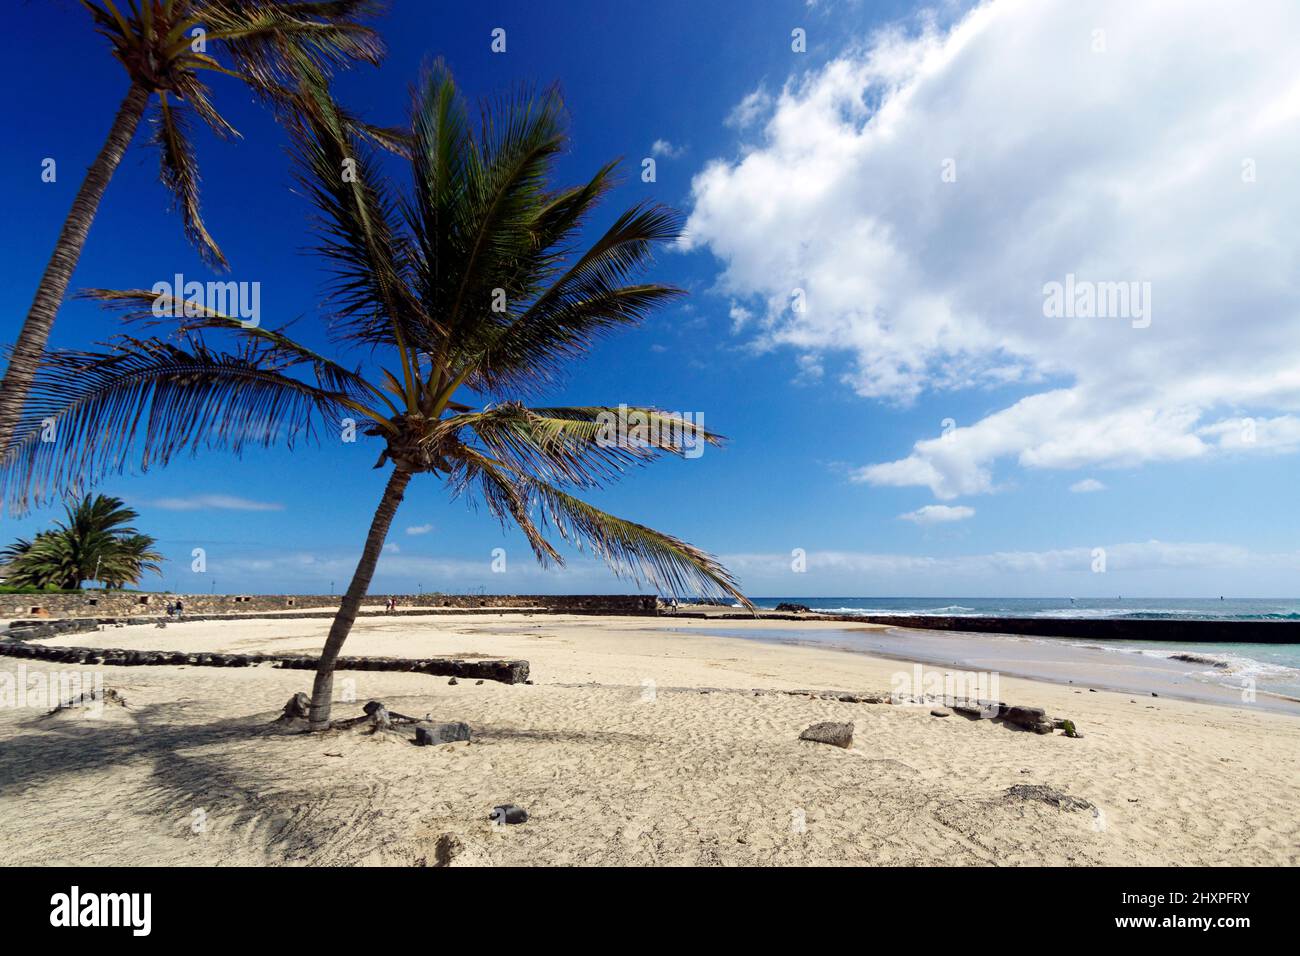 Playa De Las Cucharas, Costa Teguise,Lanzarote, Canary Islands, Spain. Stock Photo